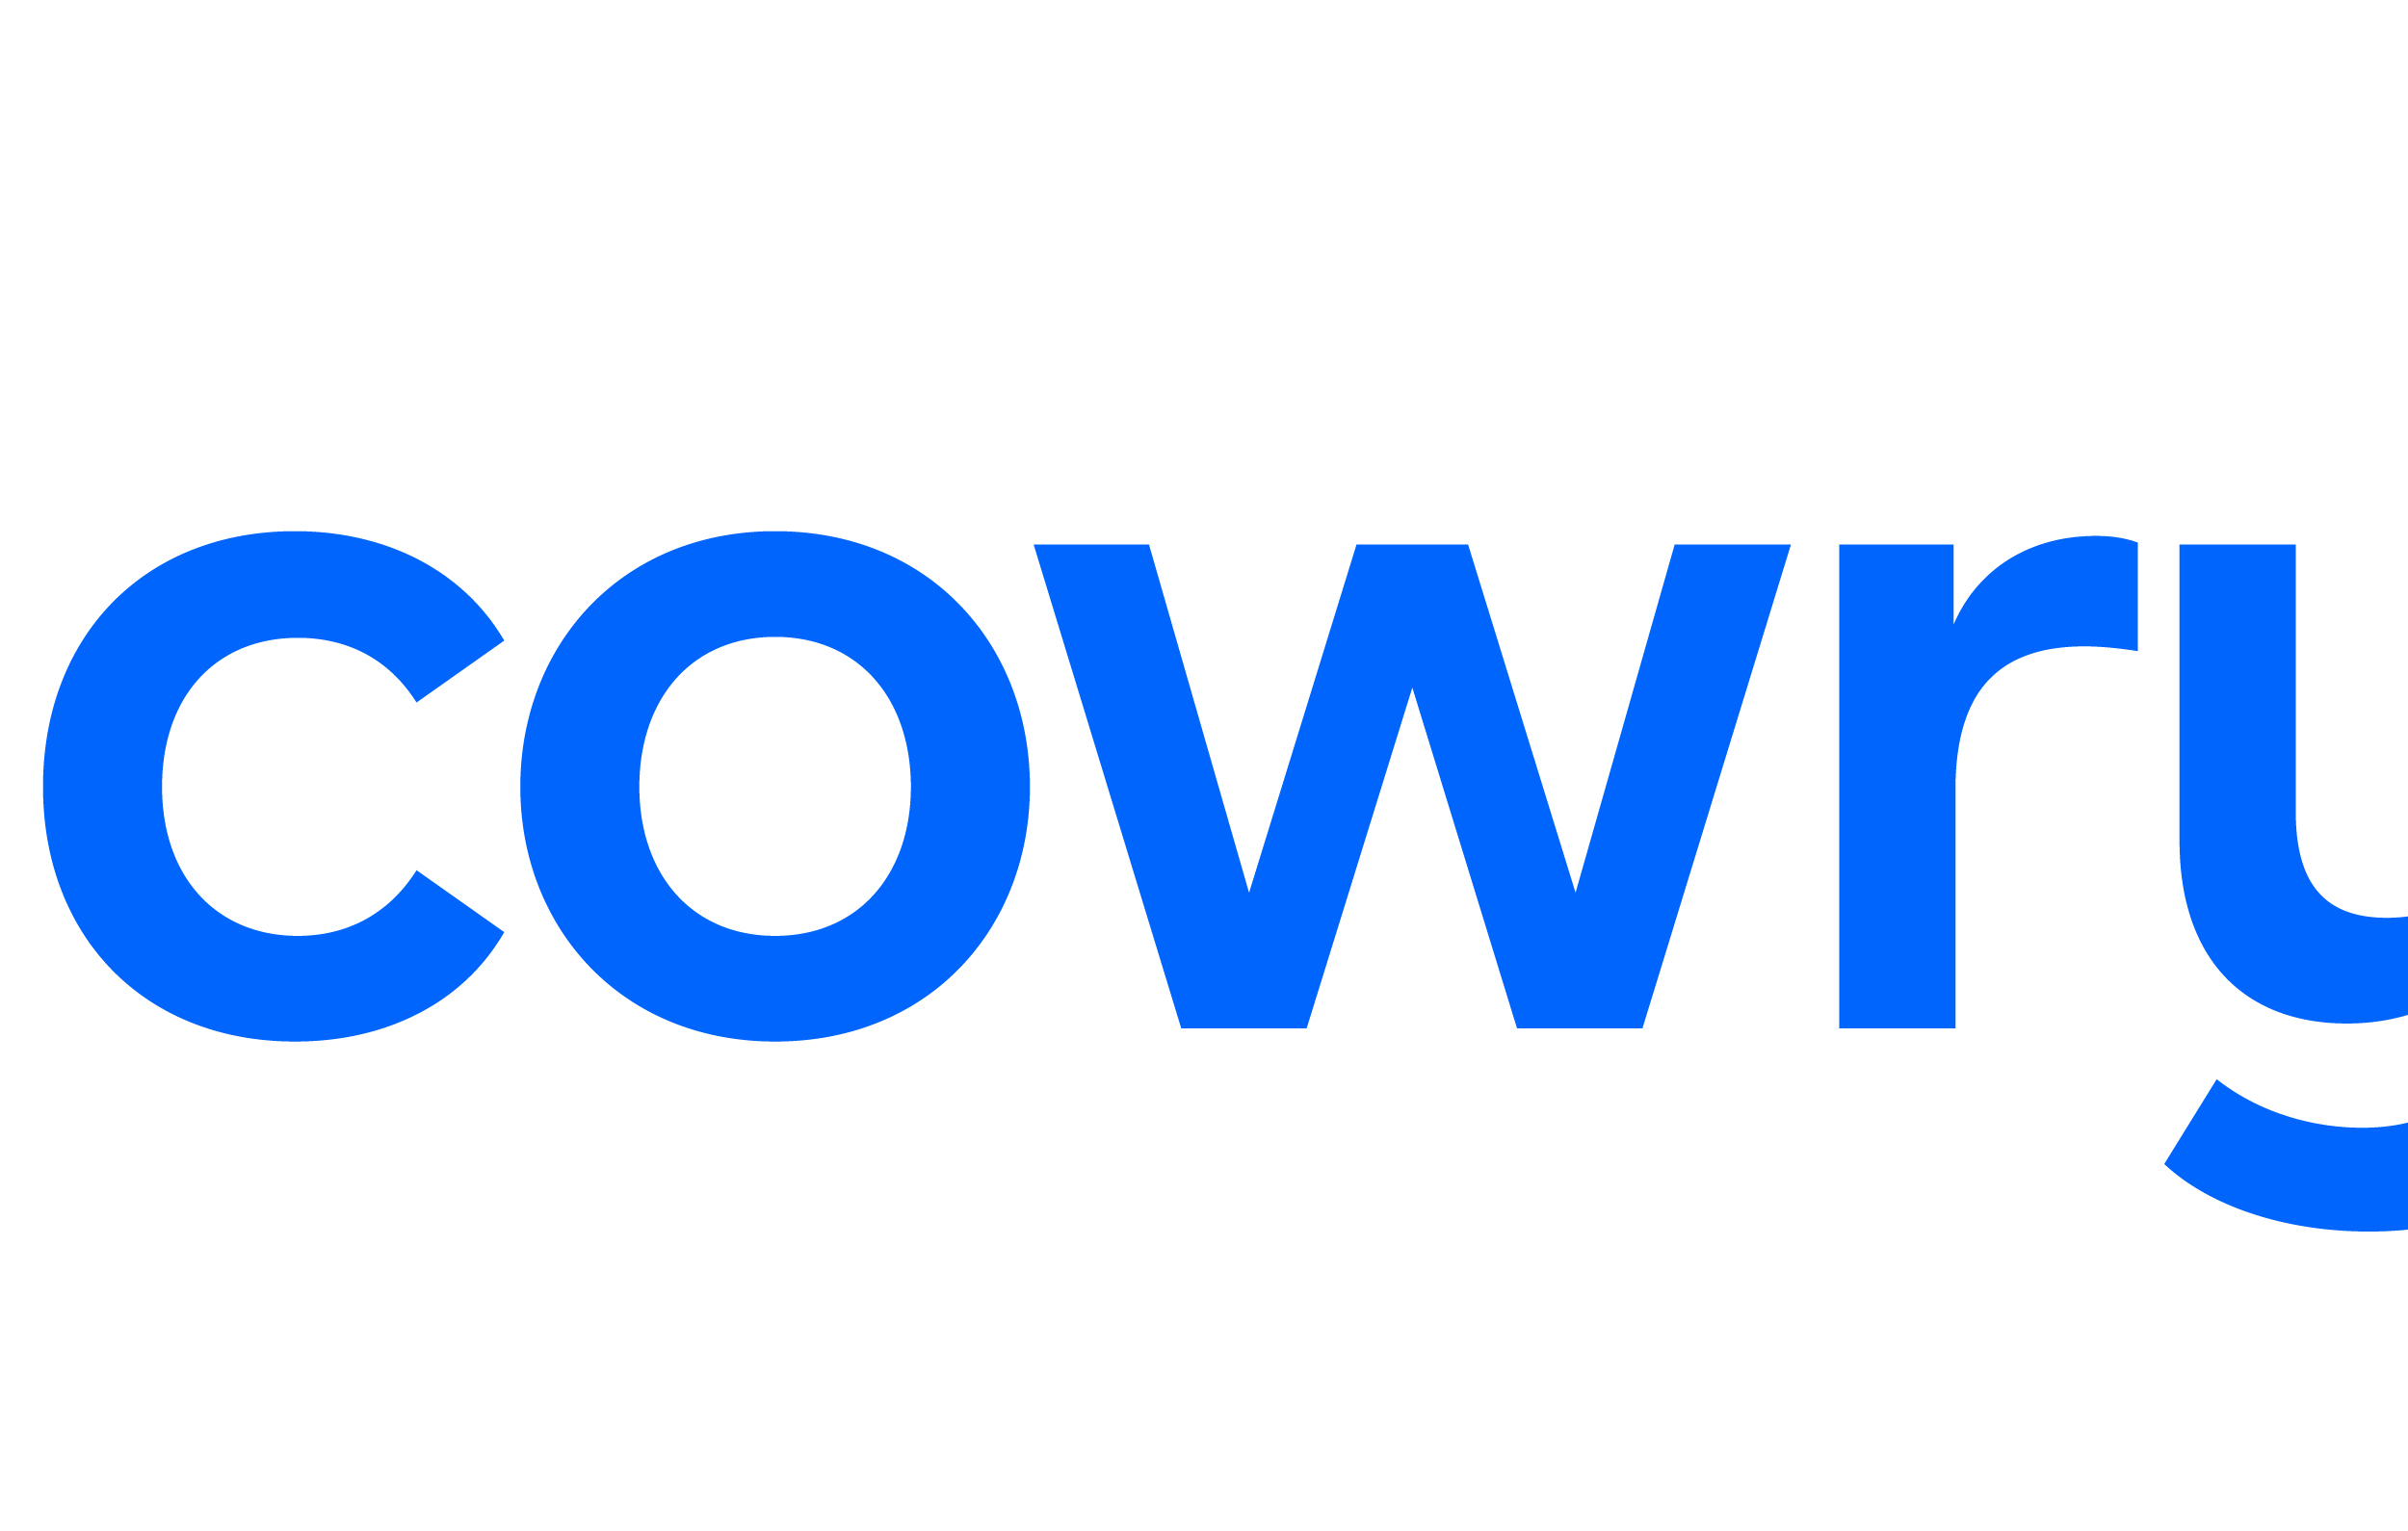 Cowrywise-Wordmark-Crop-110920-SO